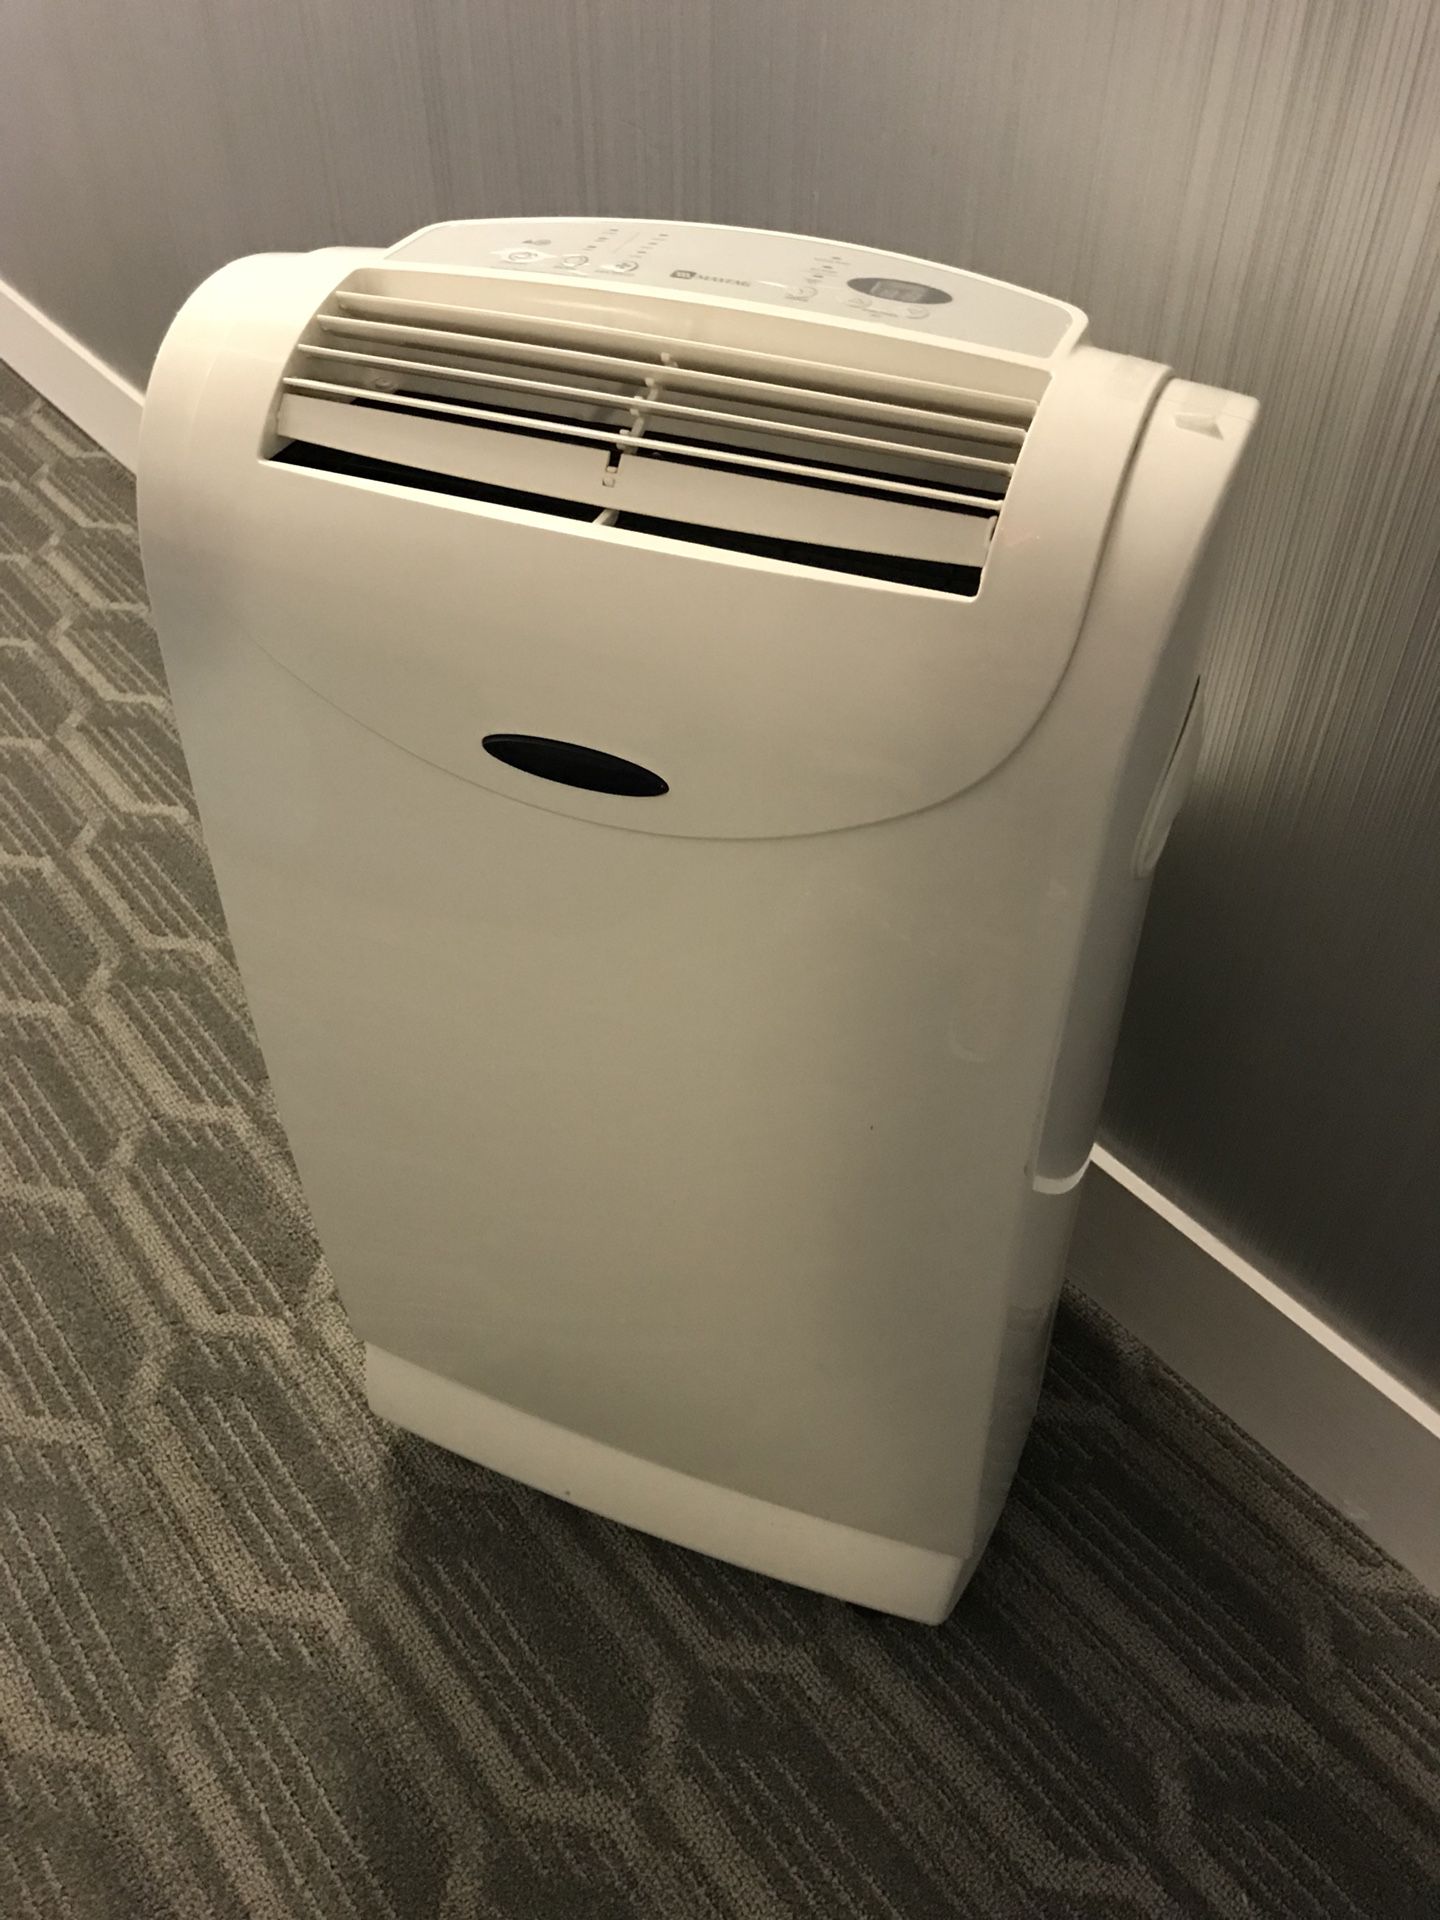 NEW! Maytag Portable Air Conditioner 9000 BTU